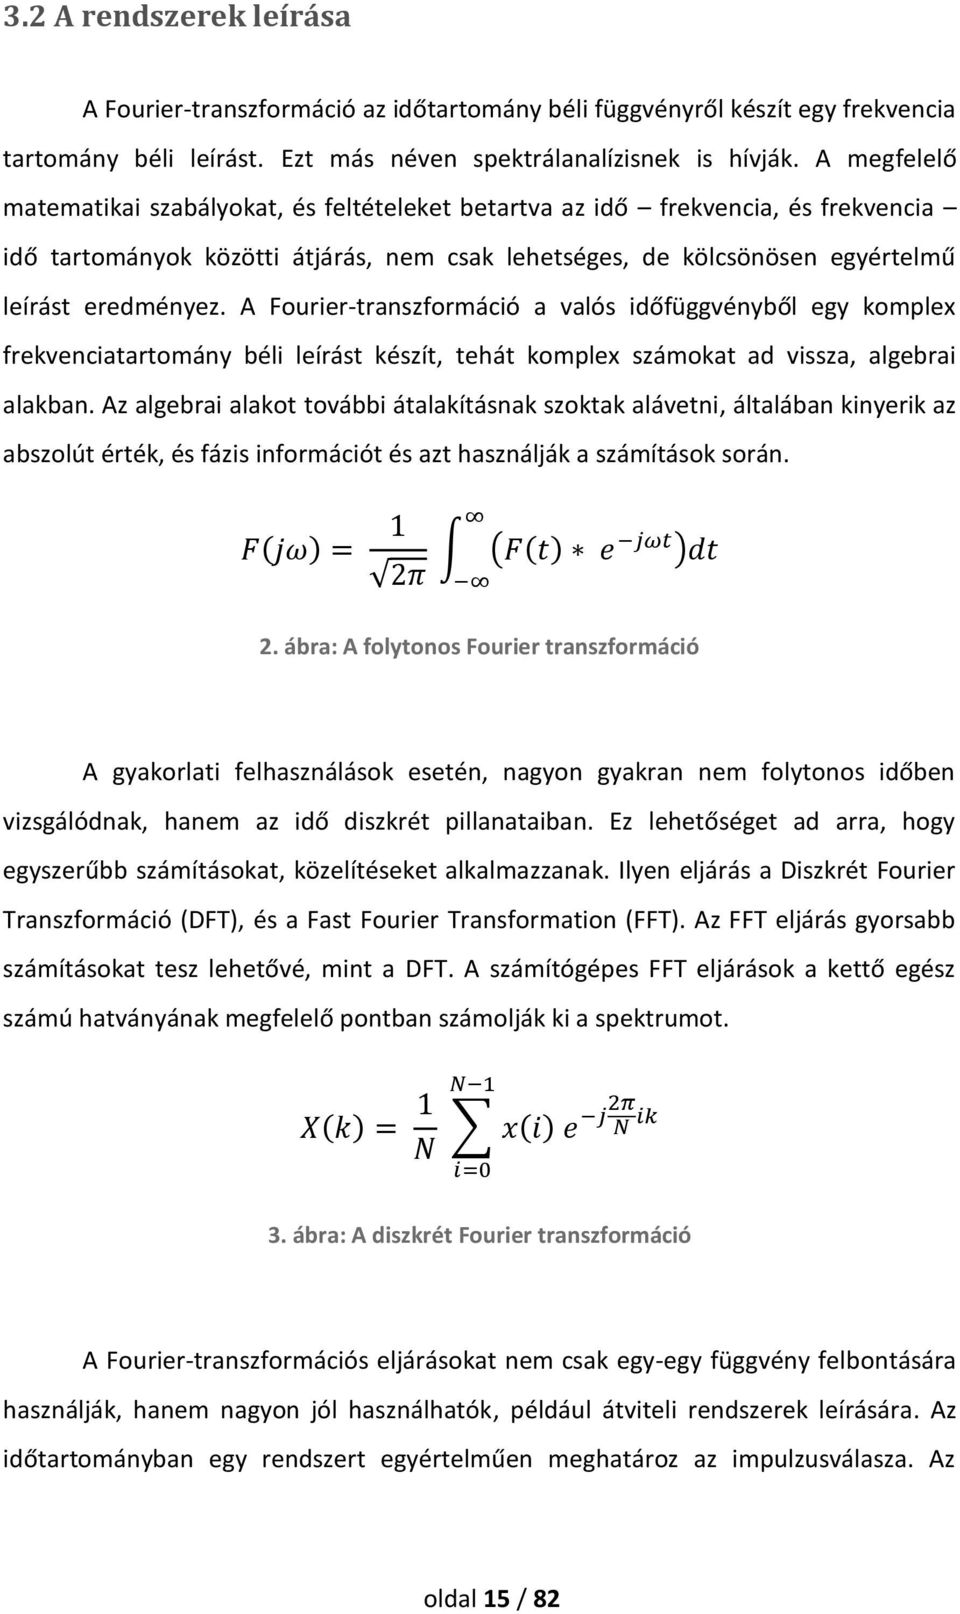 A Fourier-transzformáció a valós időfüggvényből egy komplex frekvenciatartomány béli leírást készít, tehát komplex számokat ad vissza, algebrai alakban.